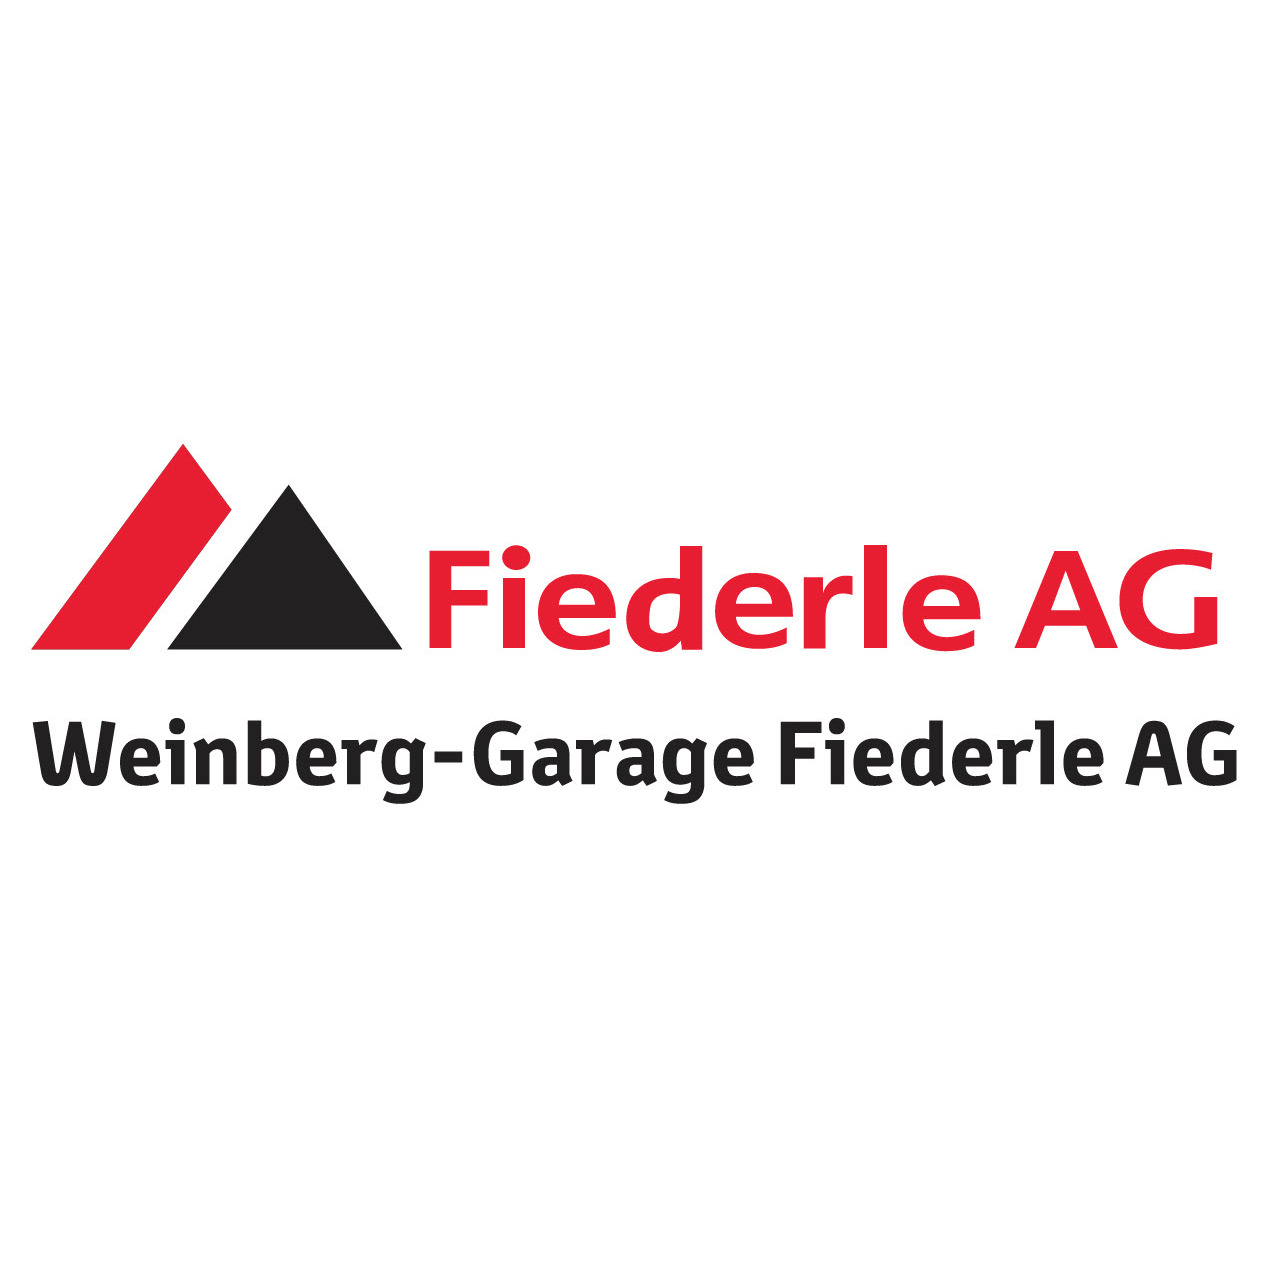 Weinberg-Garage Fiederle AG Logo